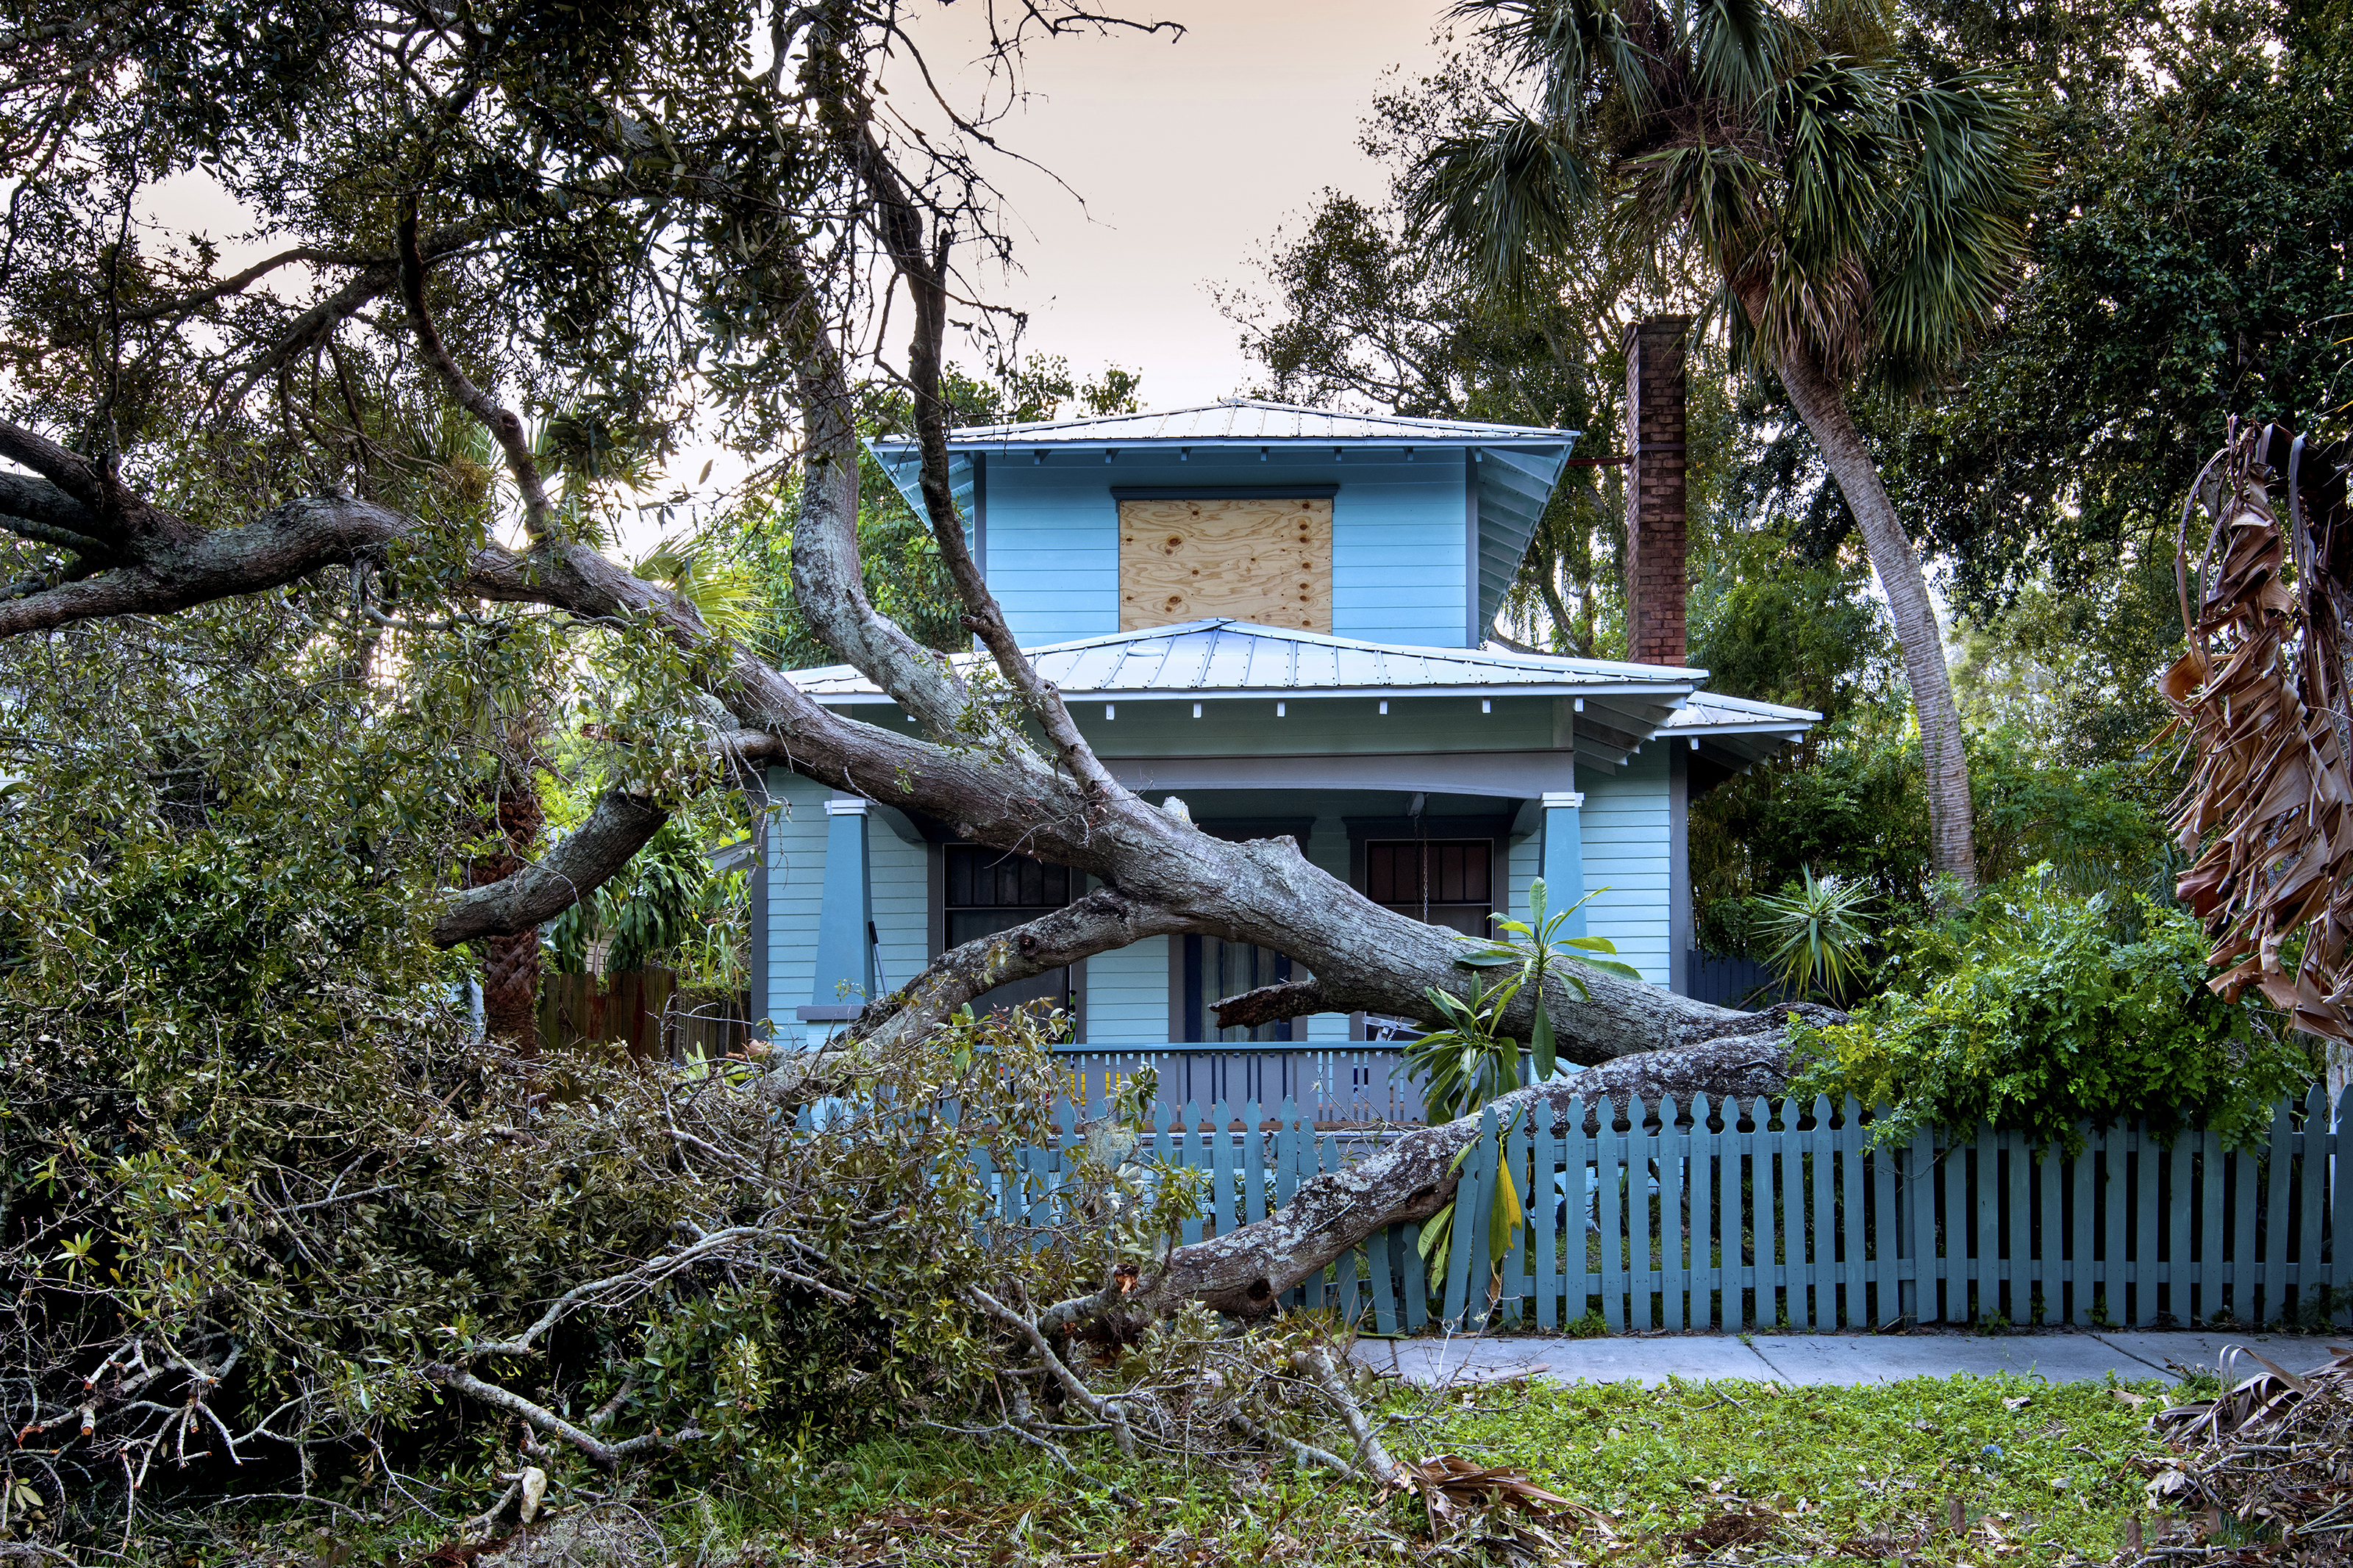 Hurricane-insurance-flood-water-wind-damage-fallen-tree-house